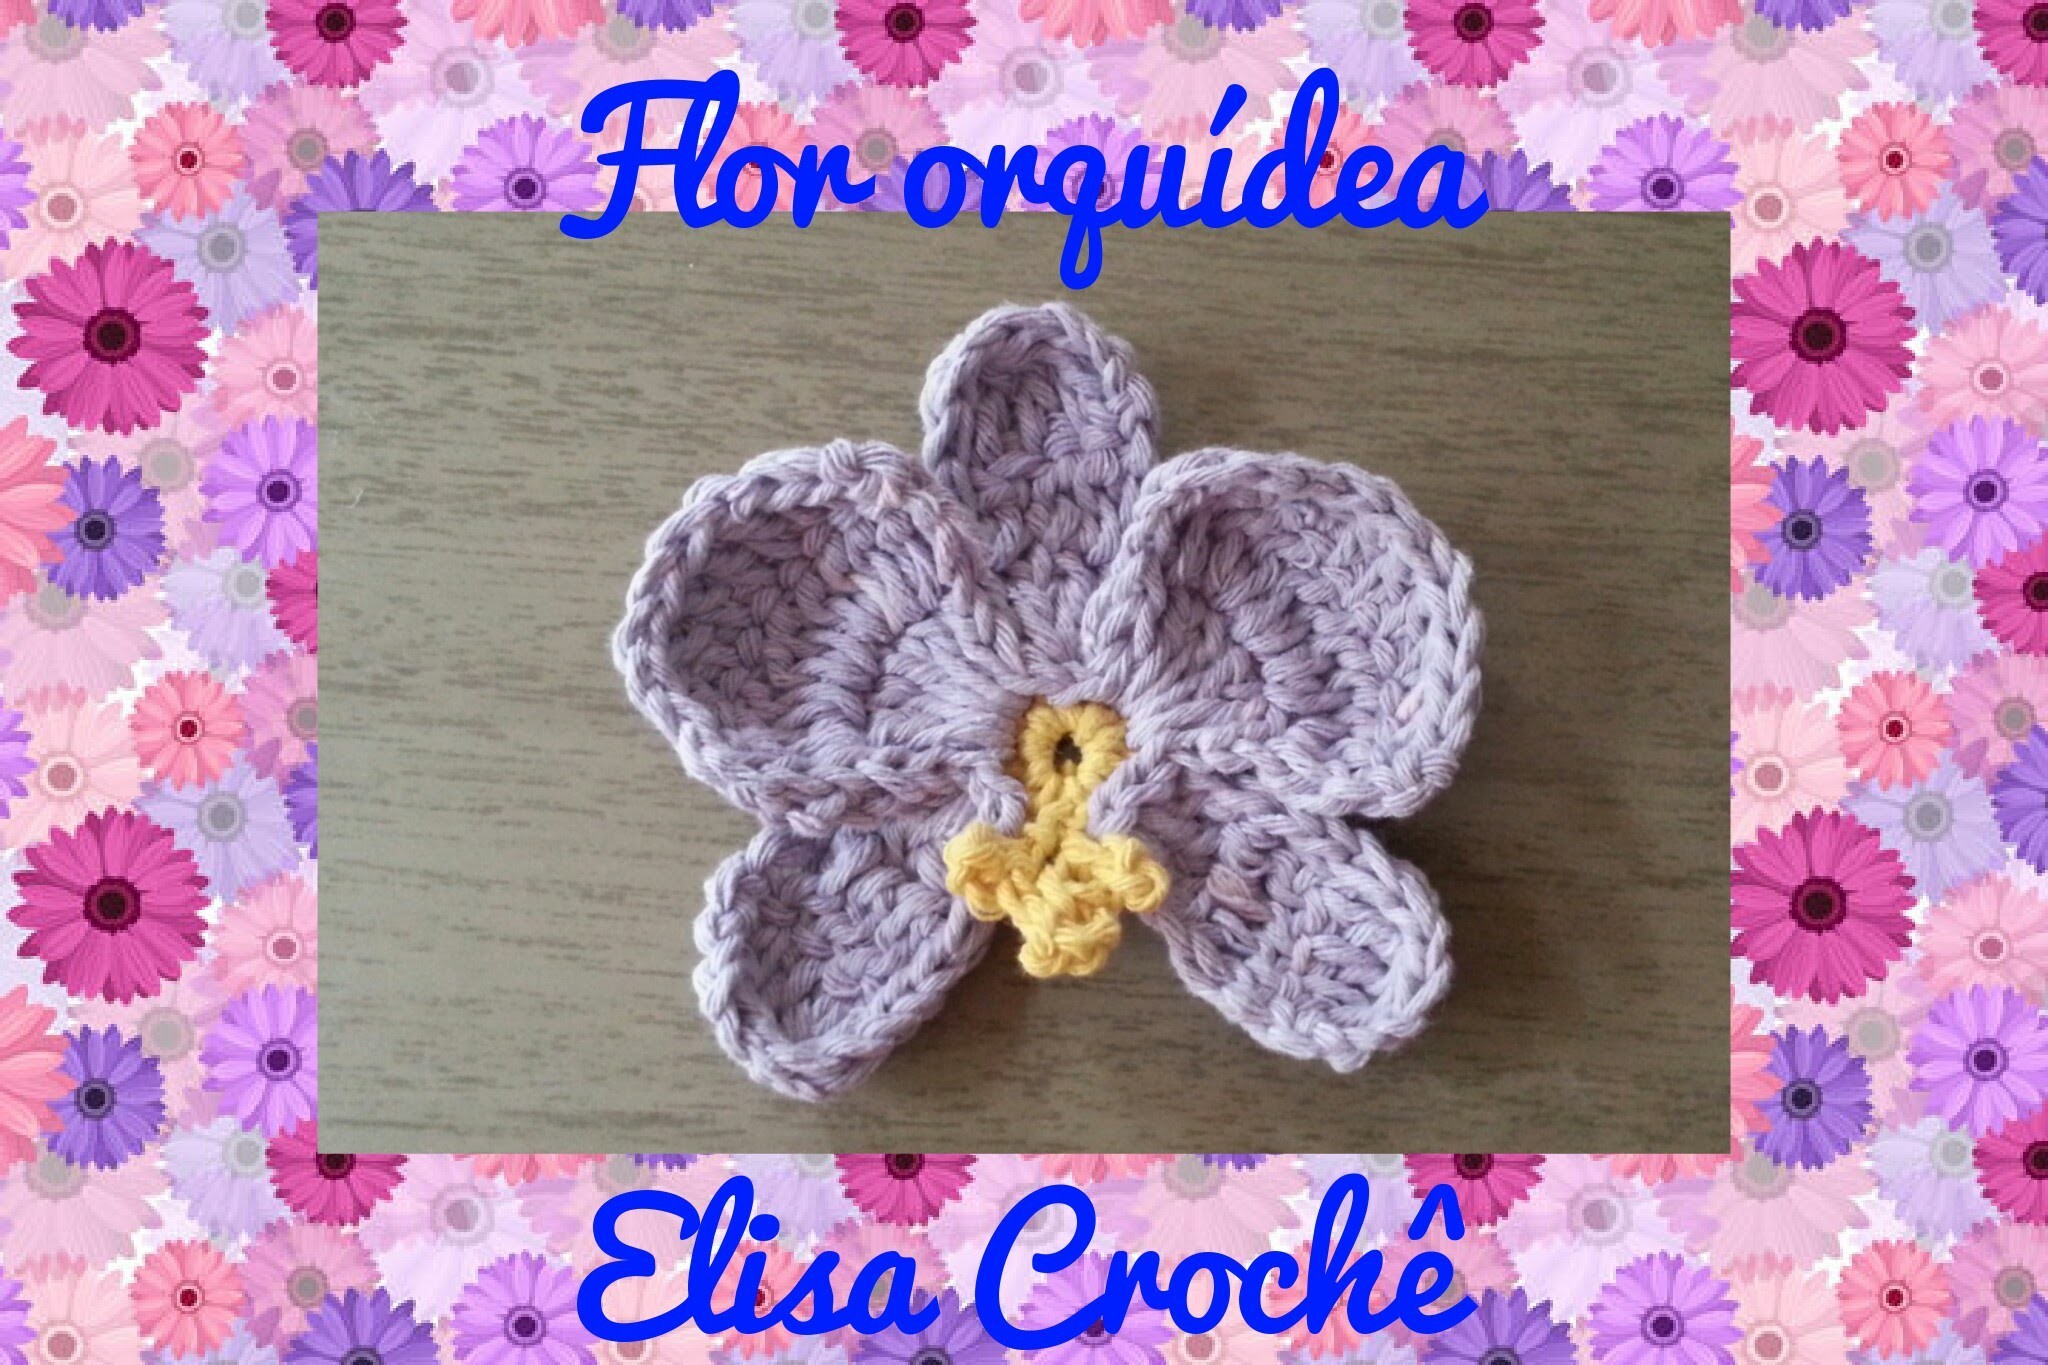 Flor para aplicar em tapete # Elisa Crochê